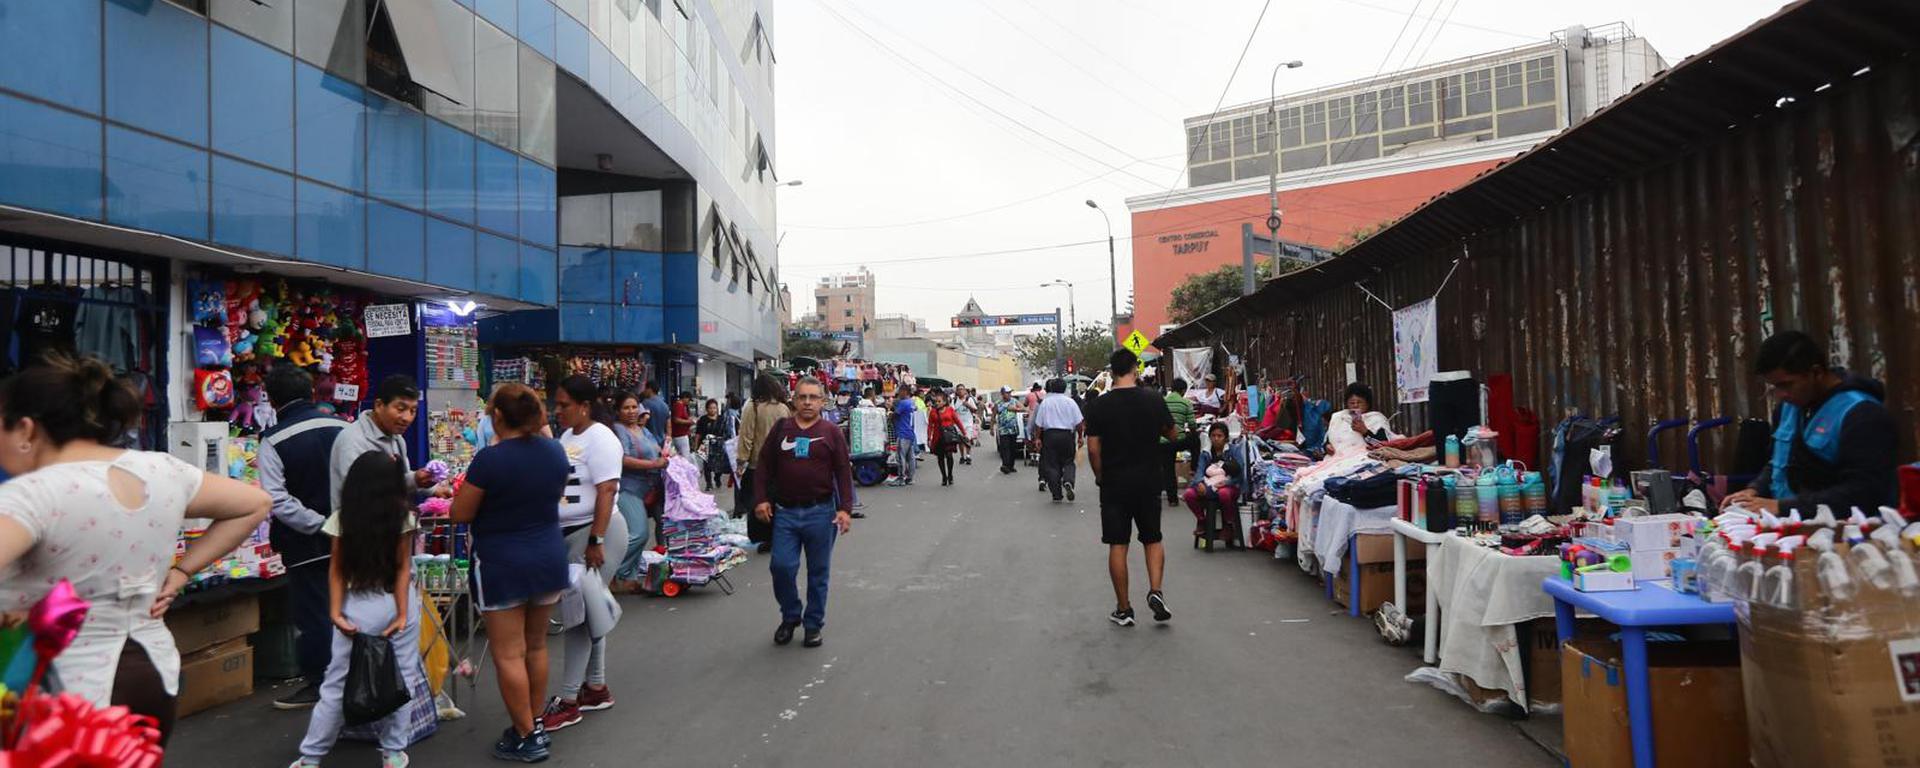 Ambulantes retirados de Mesa Redonda y Mercado Central ahora ocupan Av. Grau: ¿fue una medida planificada?